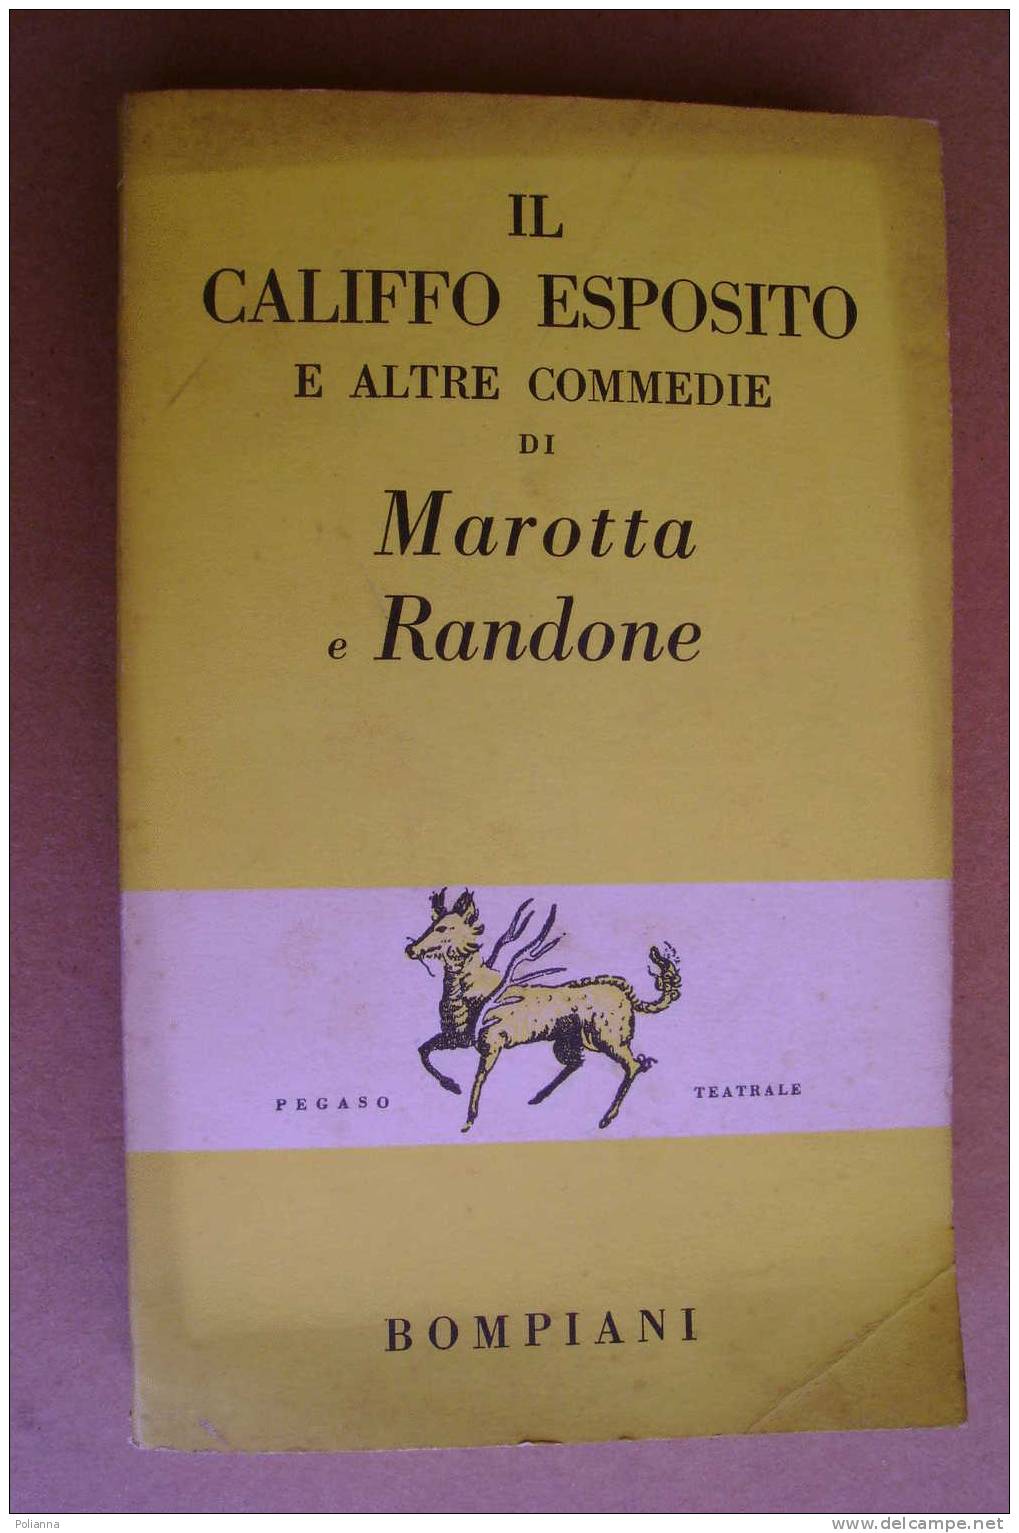 PAO/48 Marotta E Randone IL CALIFFO ESPOSITO Bompiani 1956 - Theatre